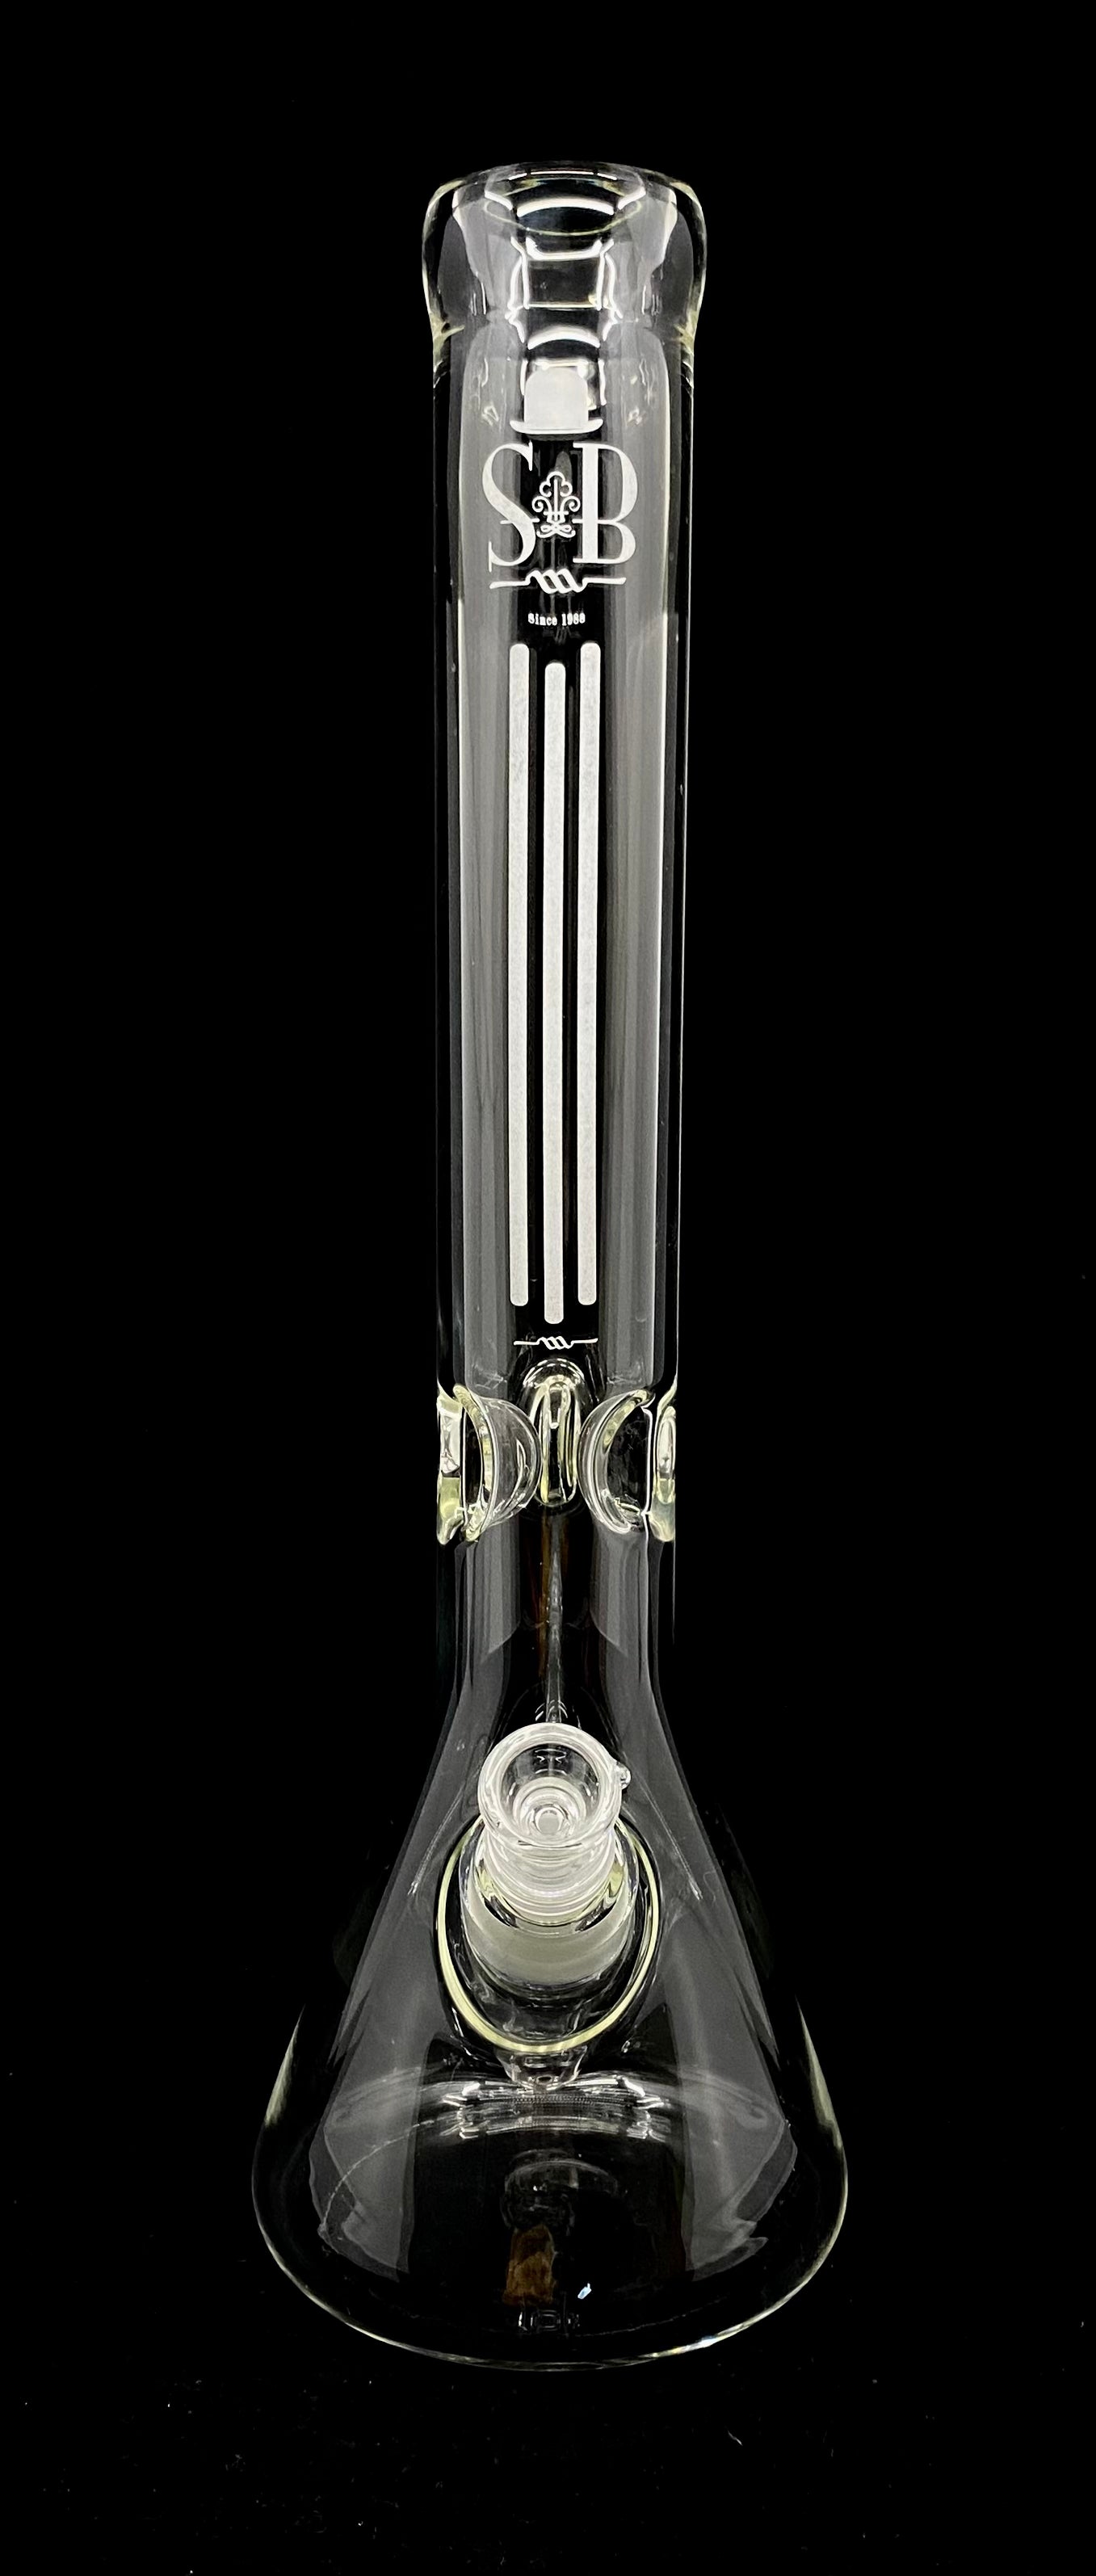 Sheldon Black 16" 45mm Beaker - 3 Lines Frost